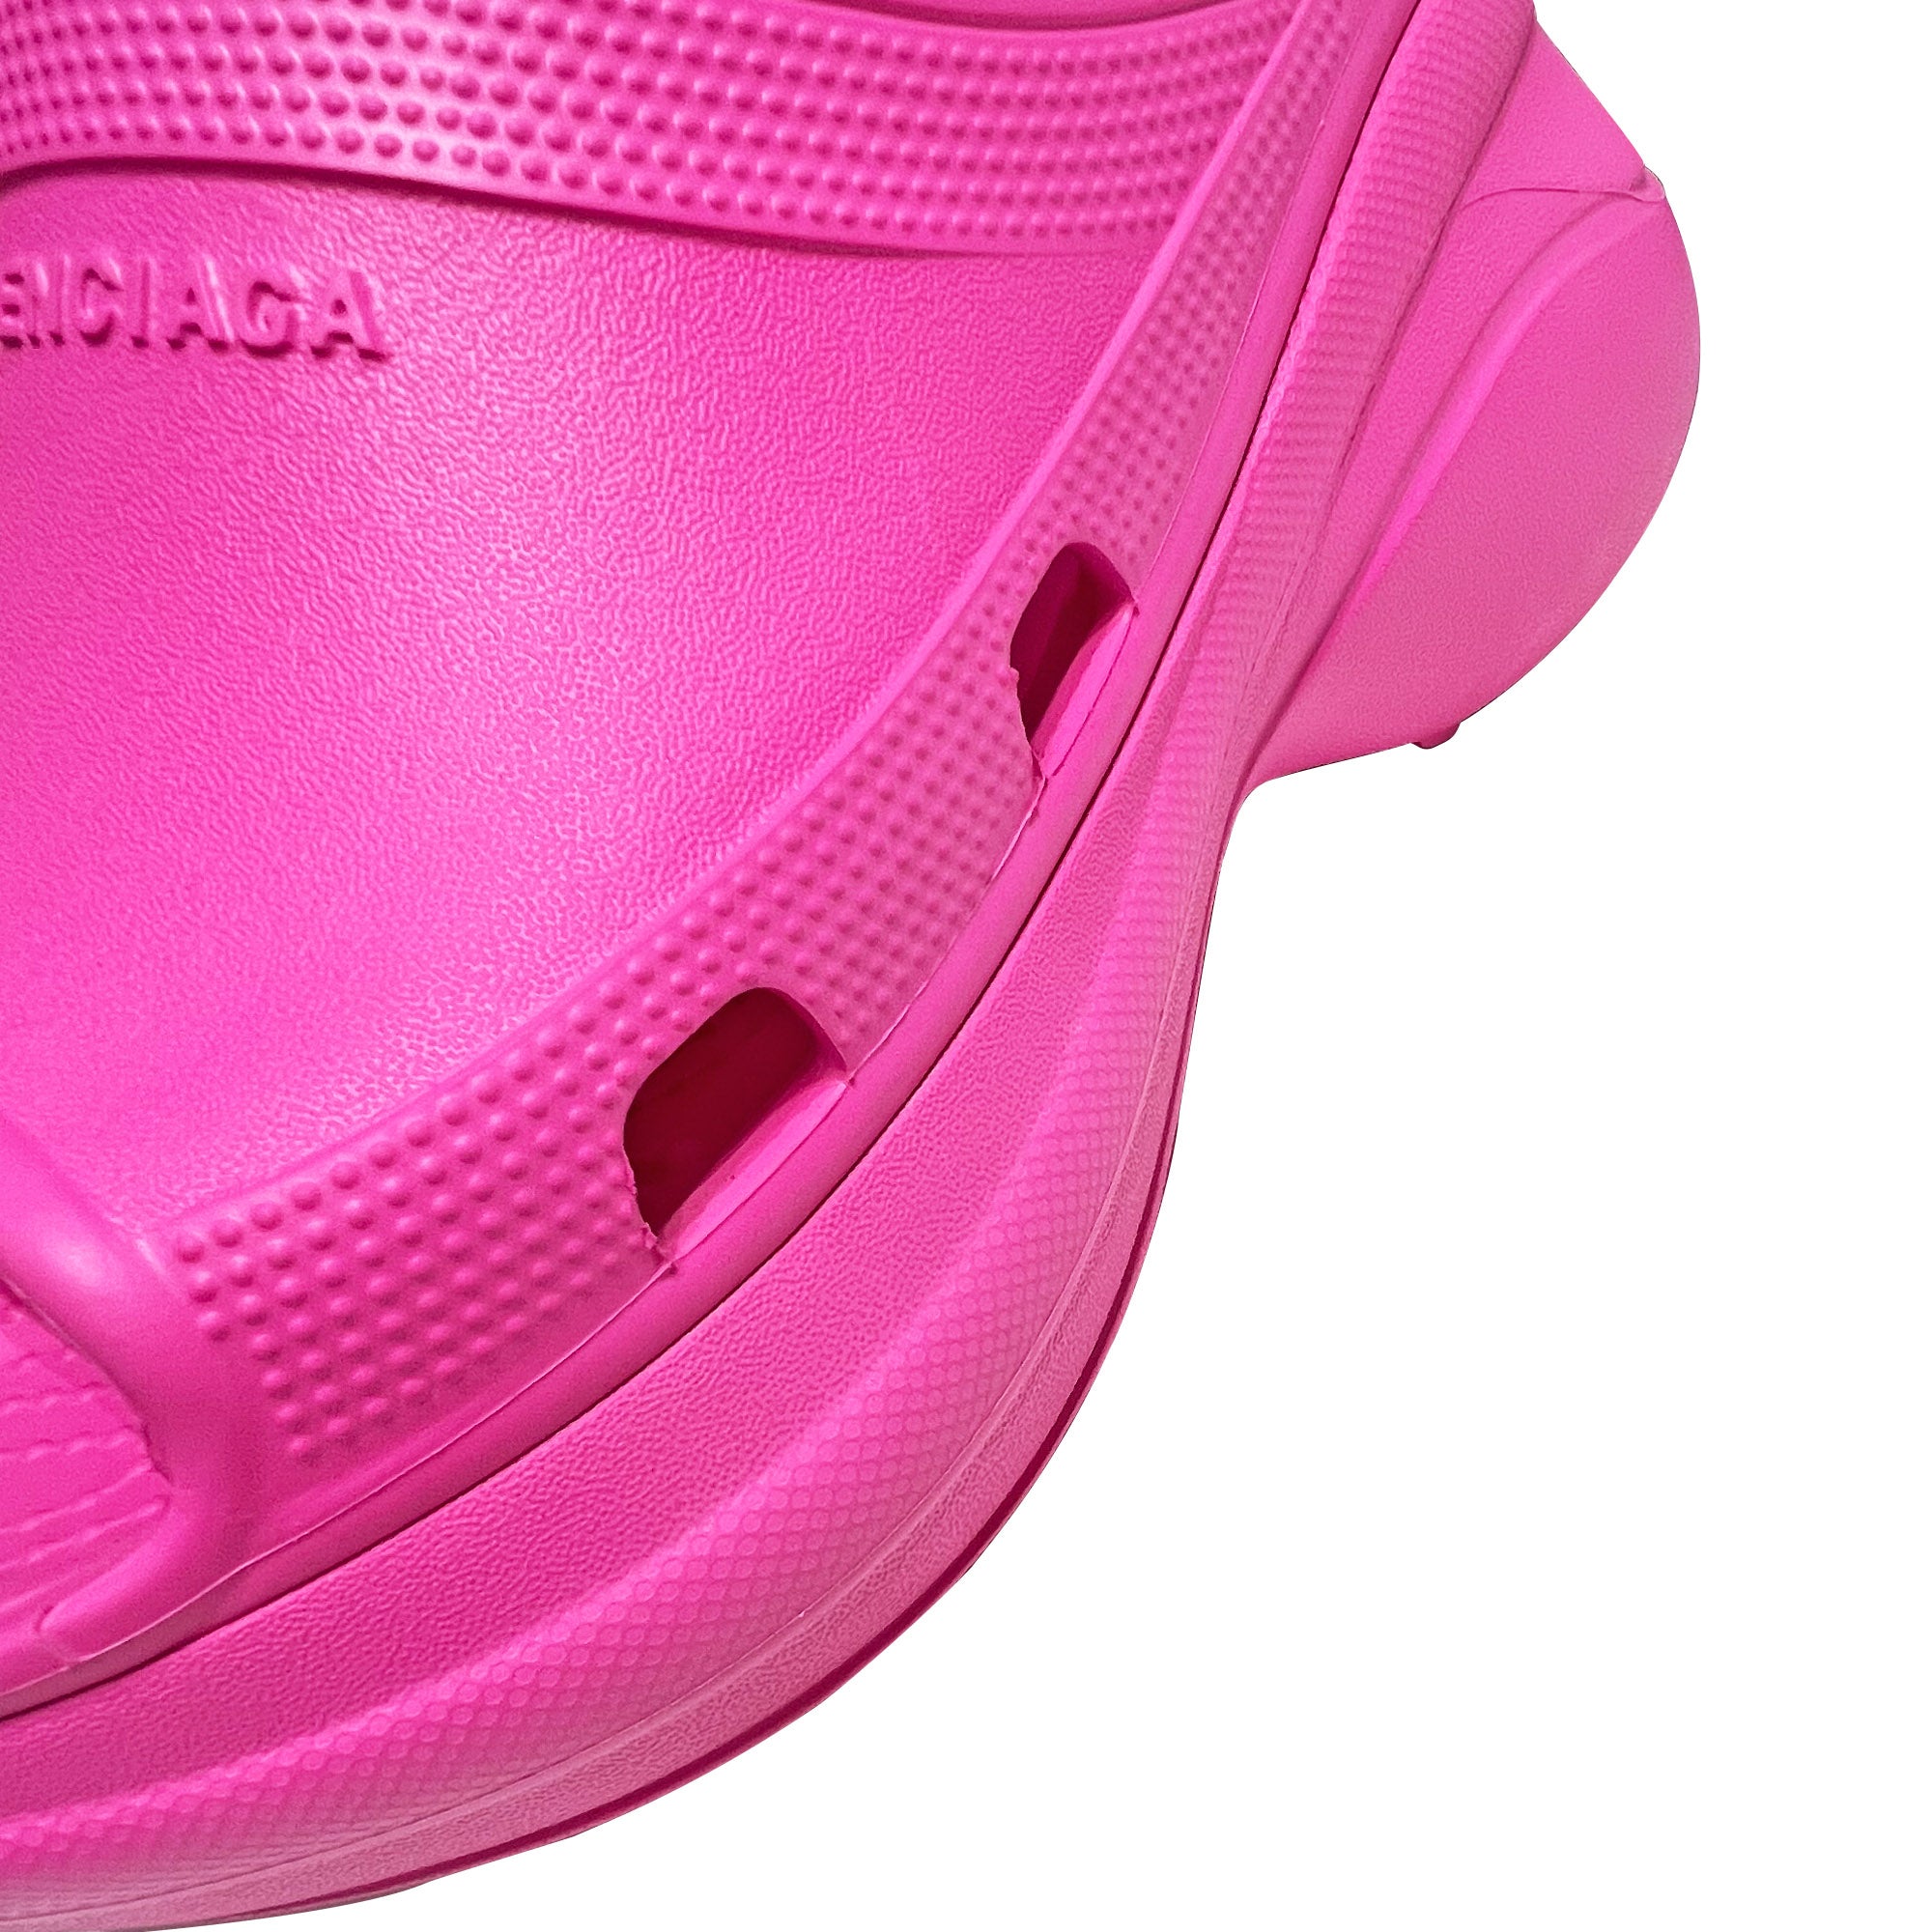 BaLenciaga Pink Pool Crocs Slide Sandals